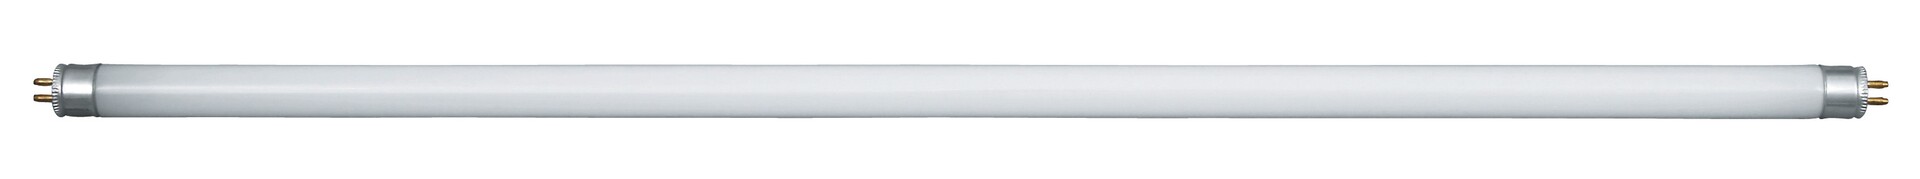 Leuchtstoffröhre Fluorescent 1747, G5, 13W, 2700K, 1118lm, warmweiß, ø16mm